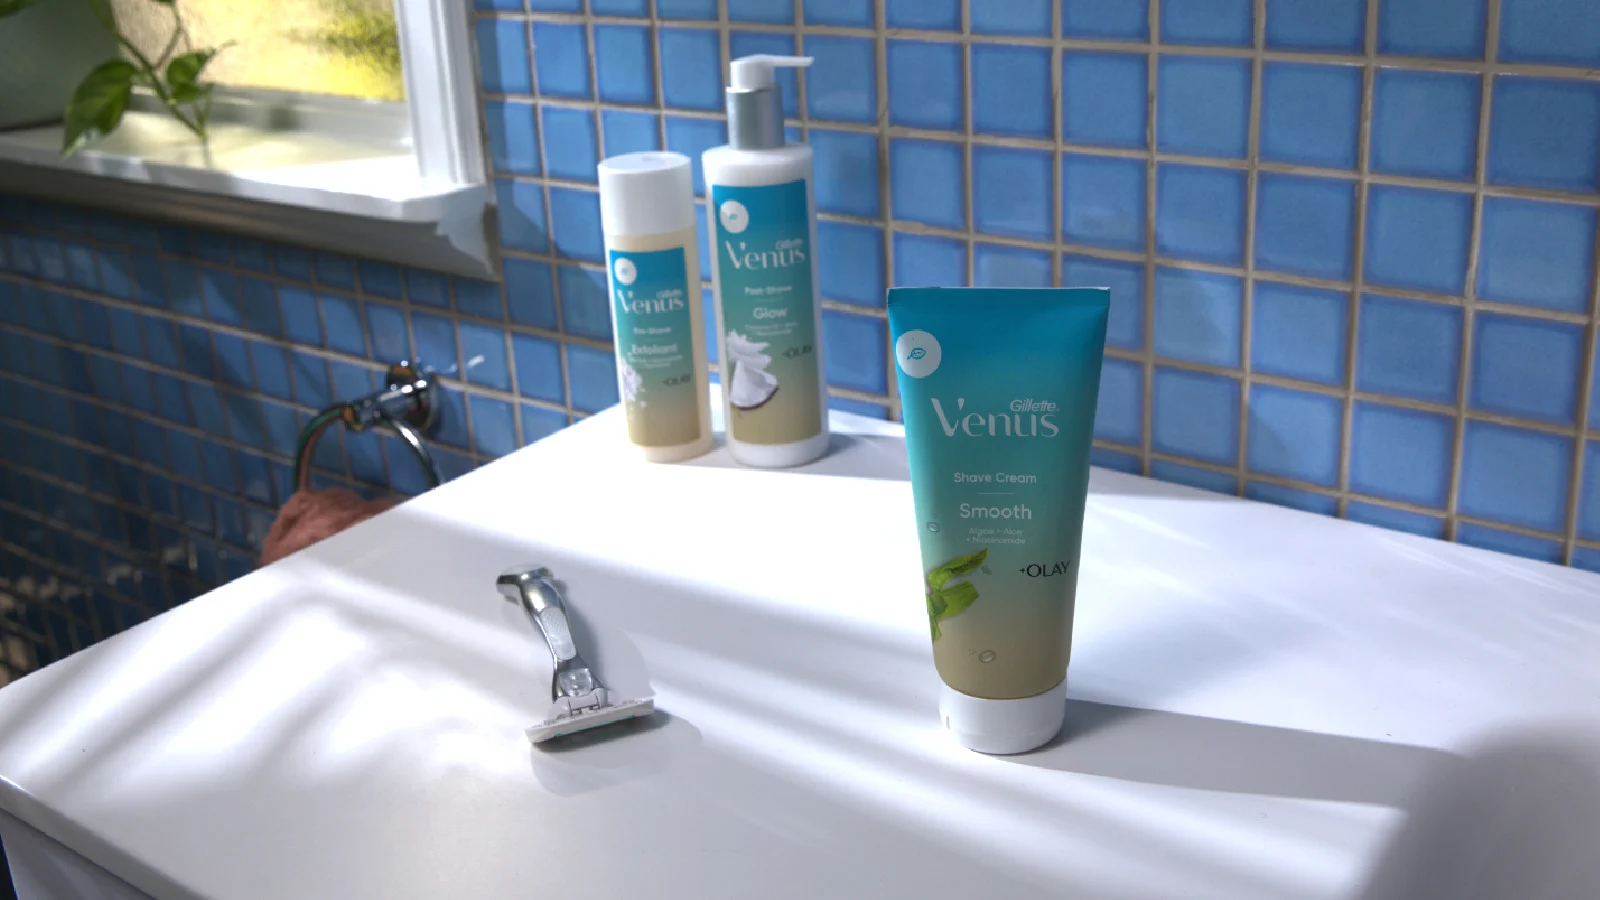 Productos Venus para el cuidado facial en el baño